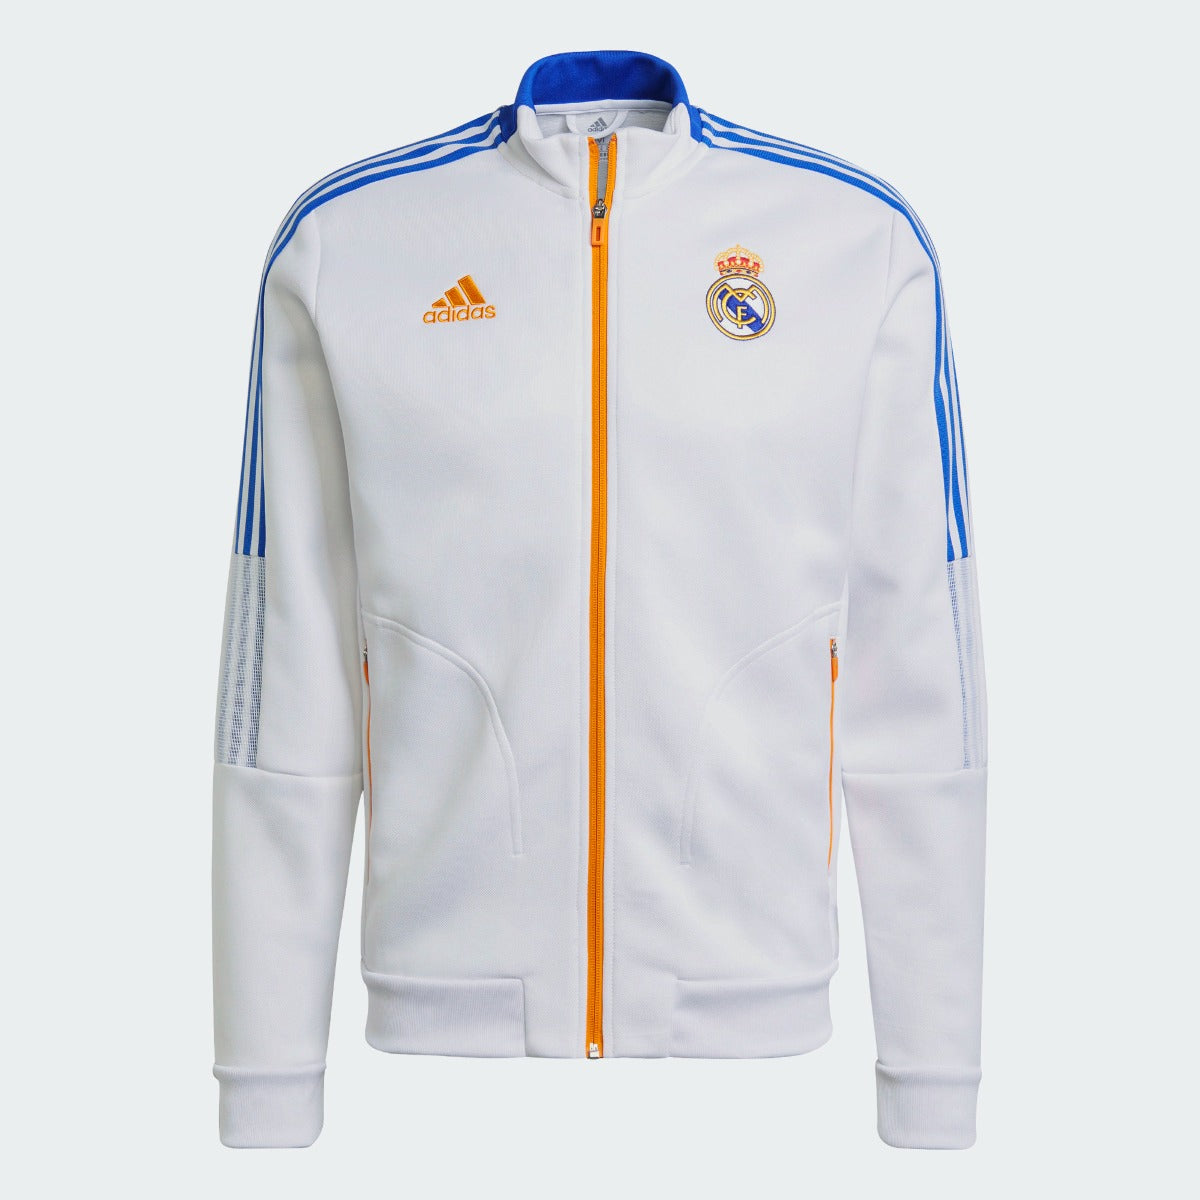 Adidas 2021-22 Real Madrid Anthem Jacket - White-Blue-Orange (Front)